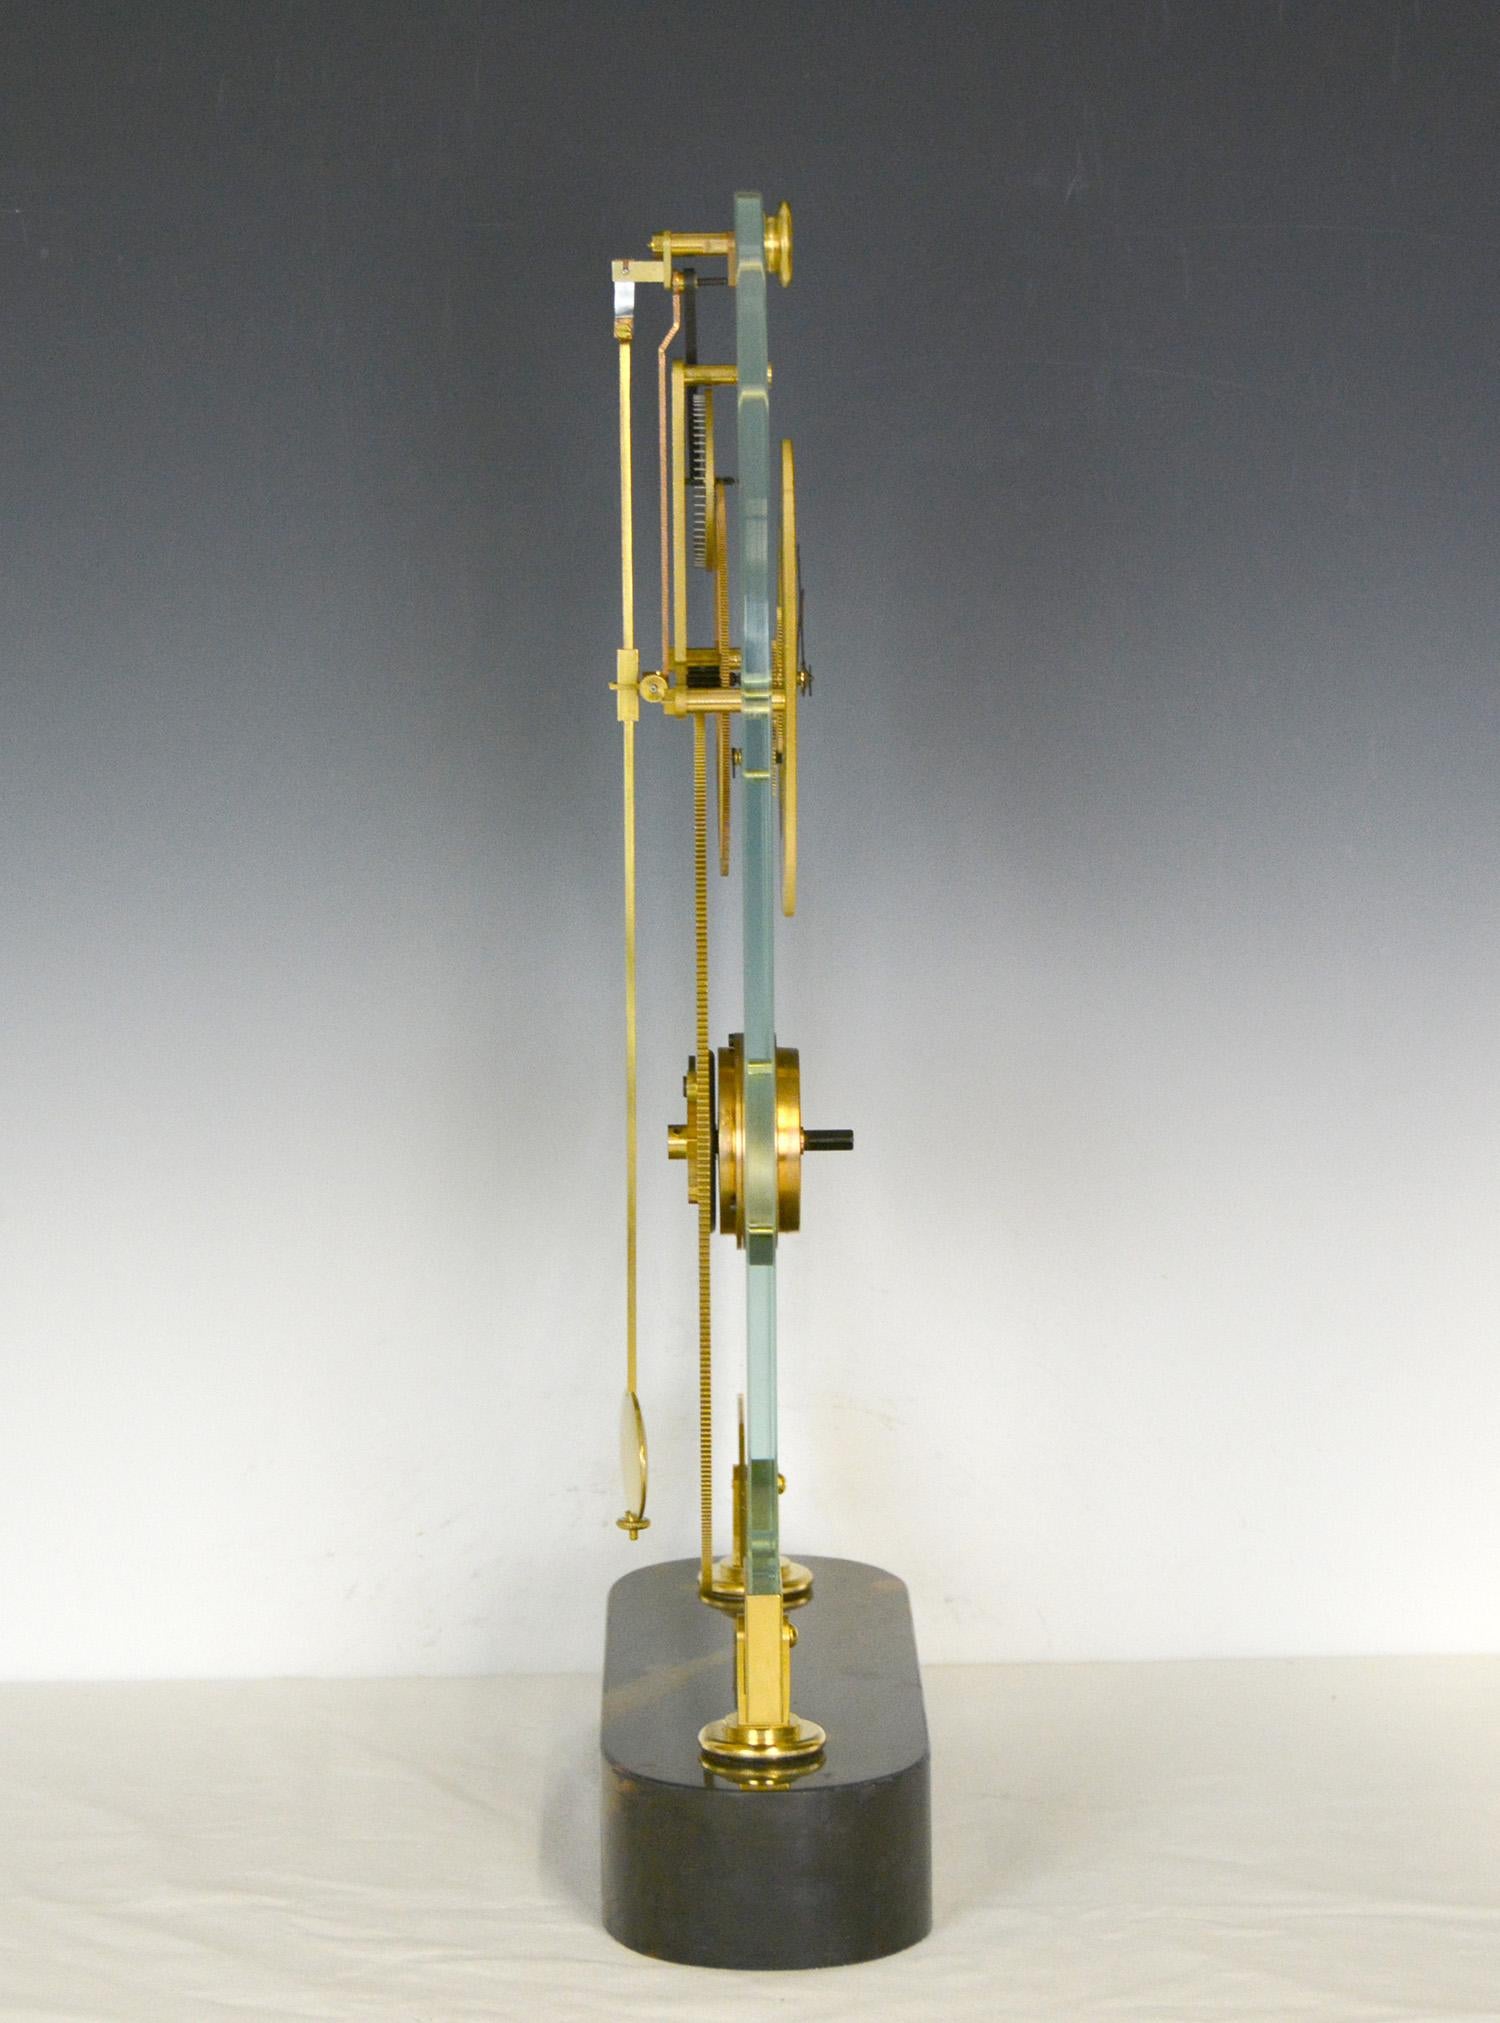 Französisch Stil dünne Glas Pinwheel Escapement Großes Rad Skelett Uhr mit Marmorsockel.

Hier ist ein sehr seltenes Glas Geheimnis Skelett Uhr. Dies ist eine Skelettuhr mit sehr genauer Zeitmessung. Innerhalb von 8 Tagen verpasst die Uhr nicht eine